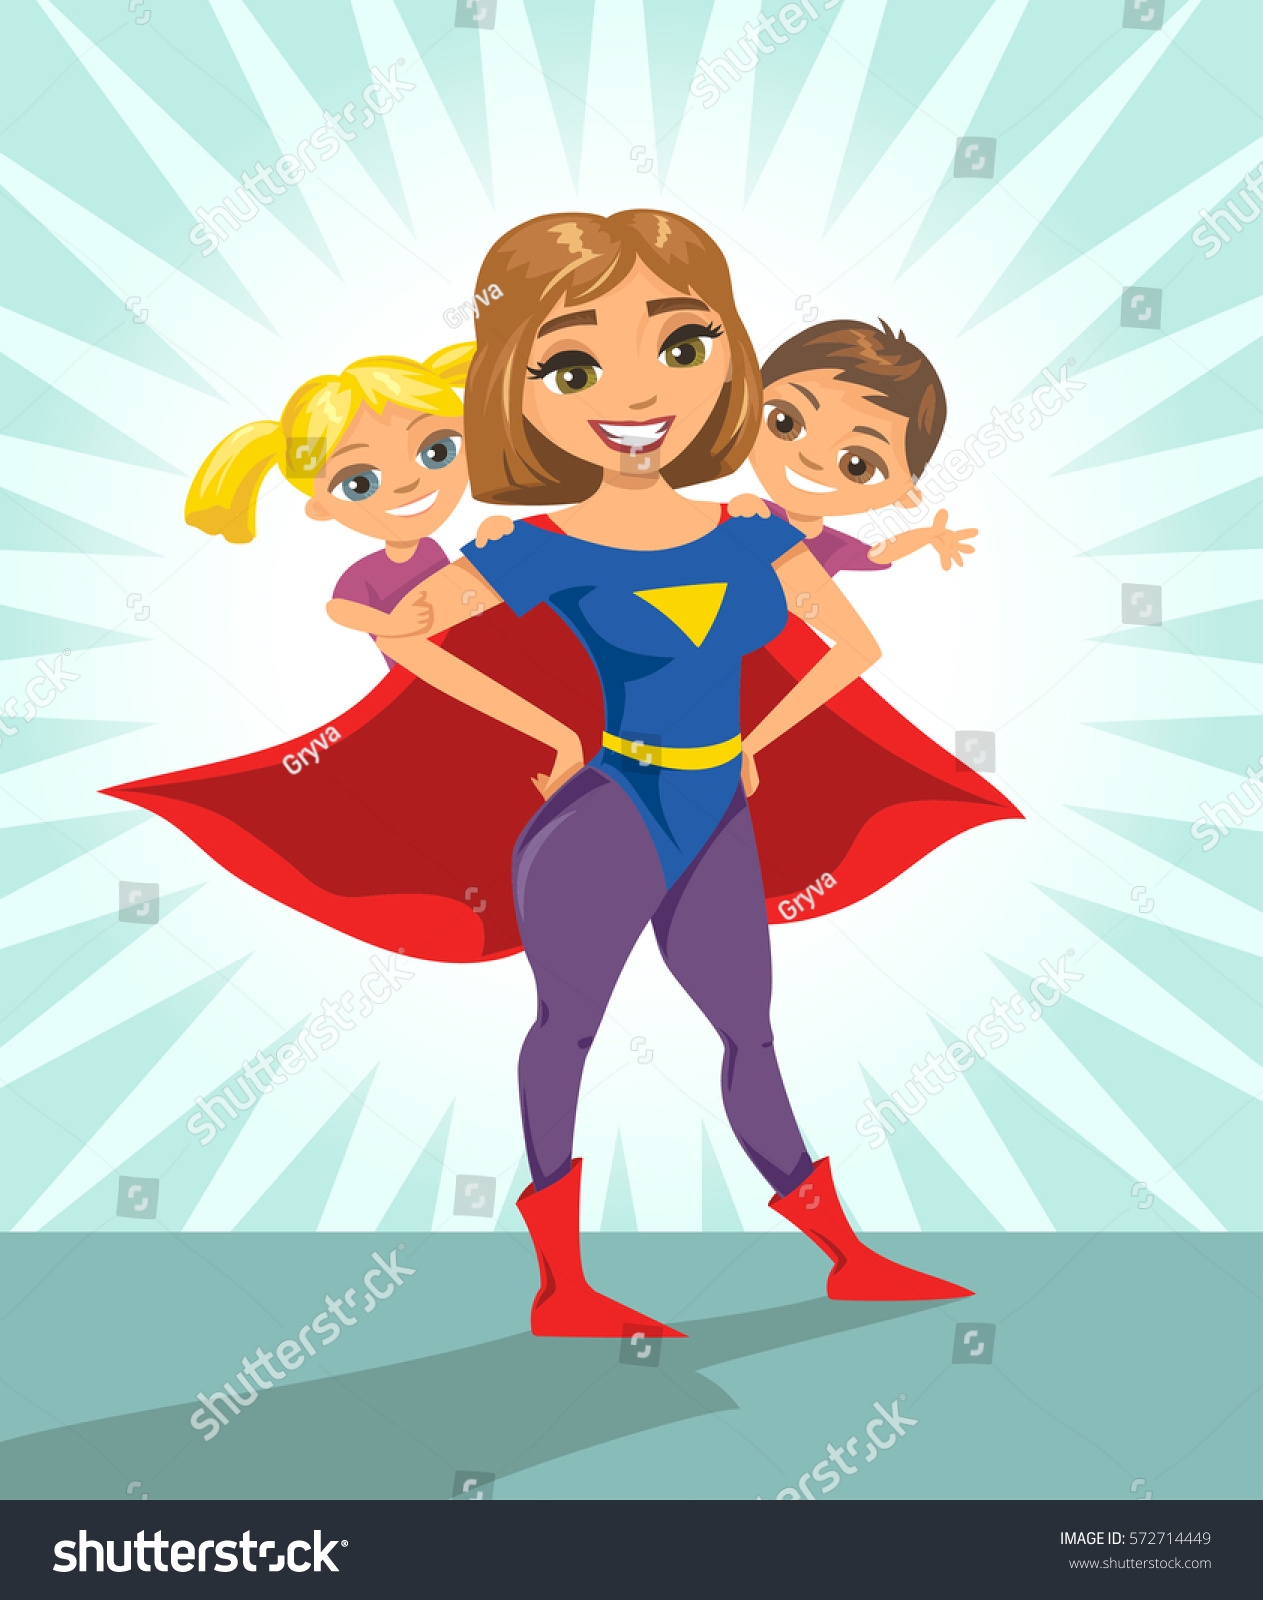 スーパーヒーロー スーパーママ 幸せな笑顔のスーパーマザーと子ども 分離型文字を含むベクターイラスト のベクター画像素材 ロイヤリティフリー